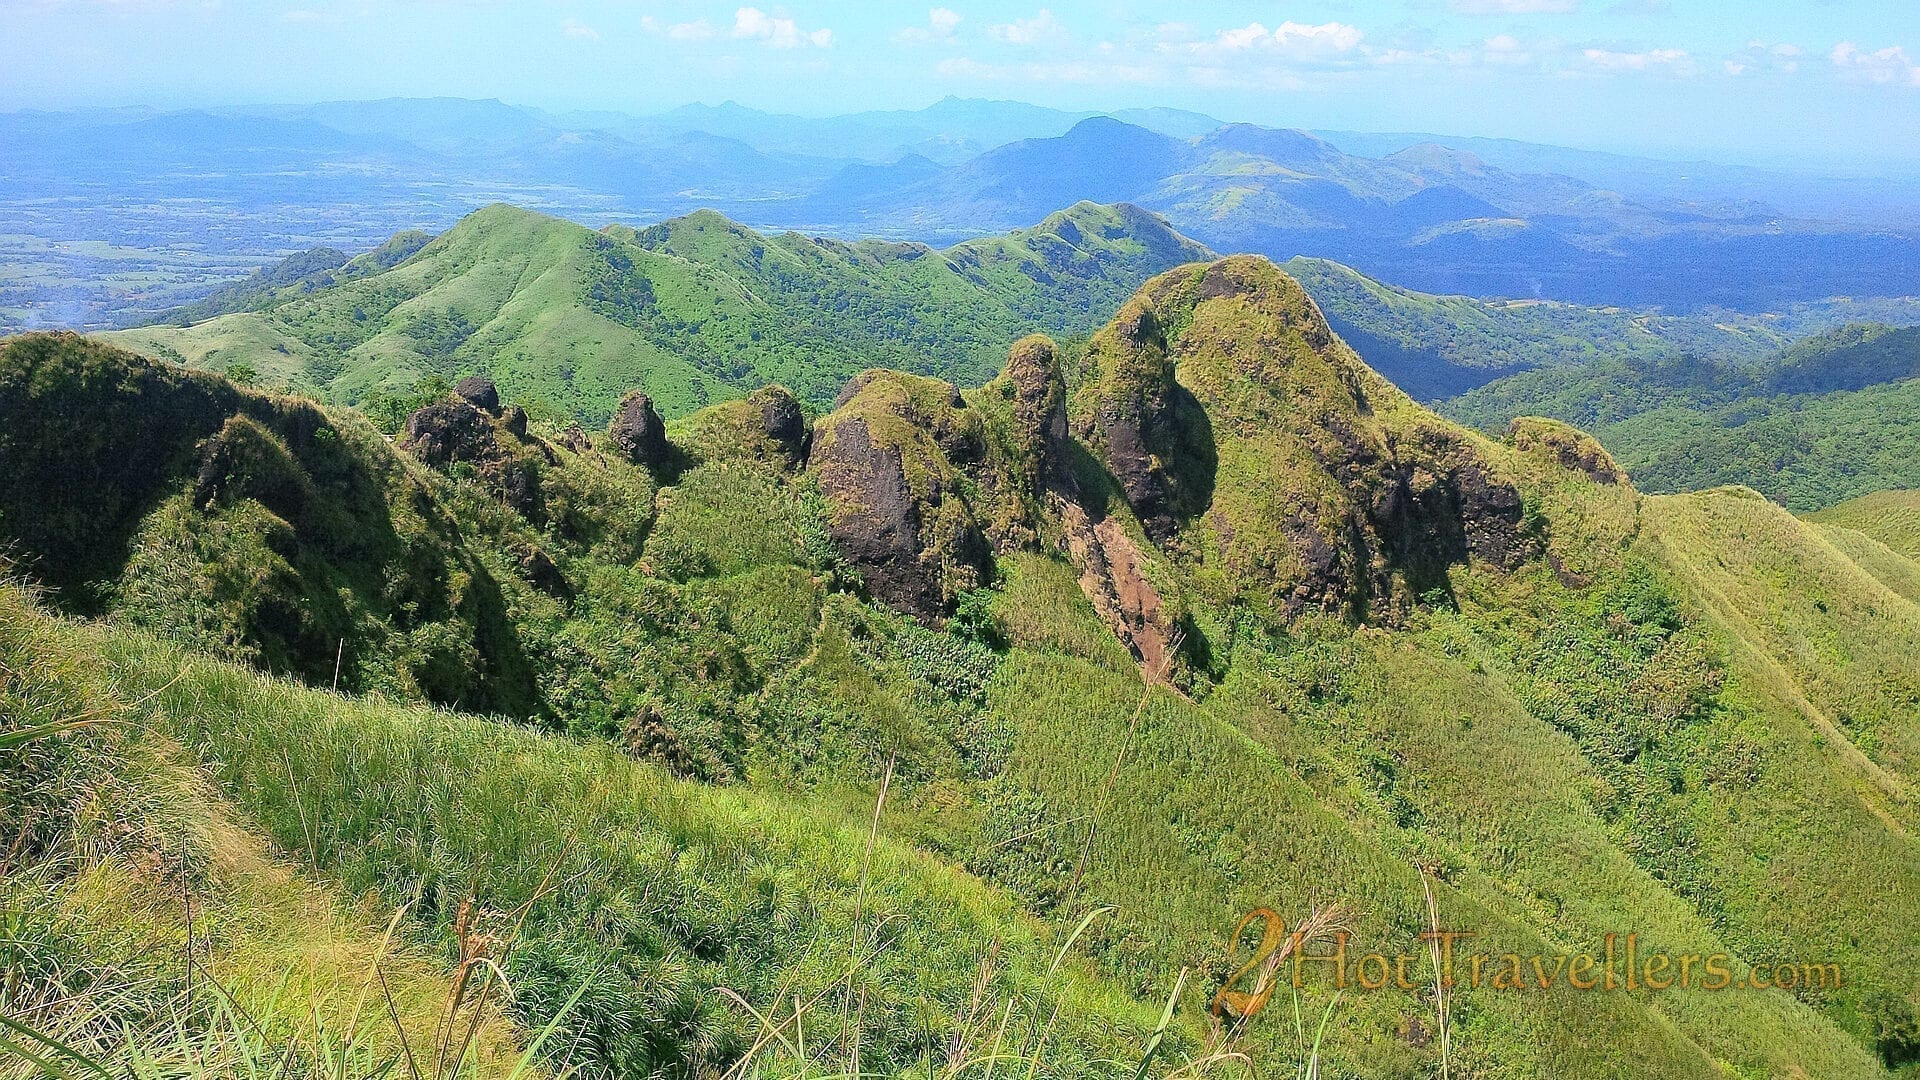 Mt Batulao batangas